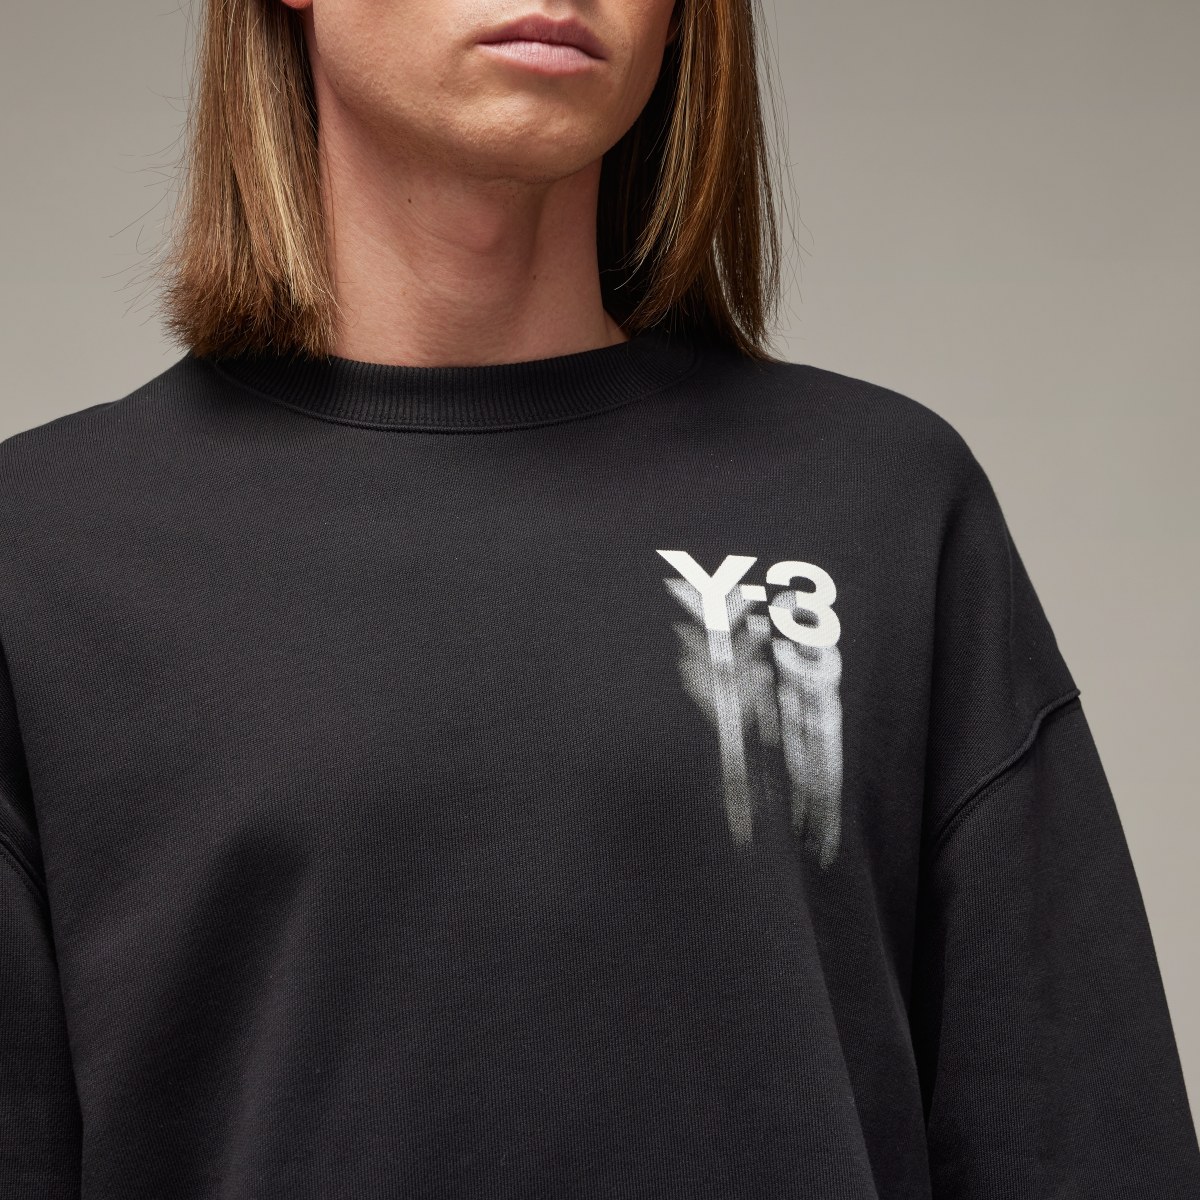 Adidas Y-3 Graphic Crew Sweatshirt. 7